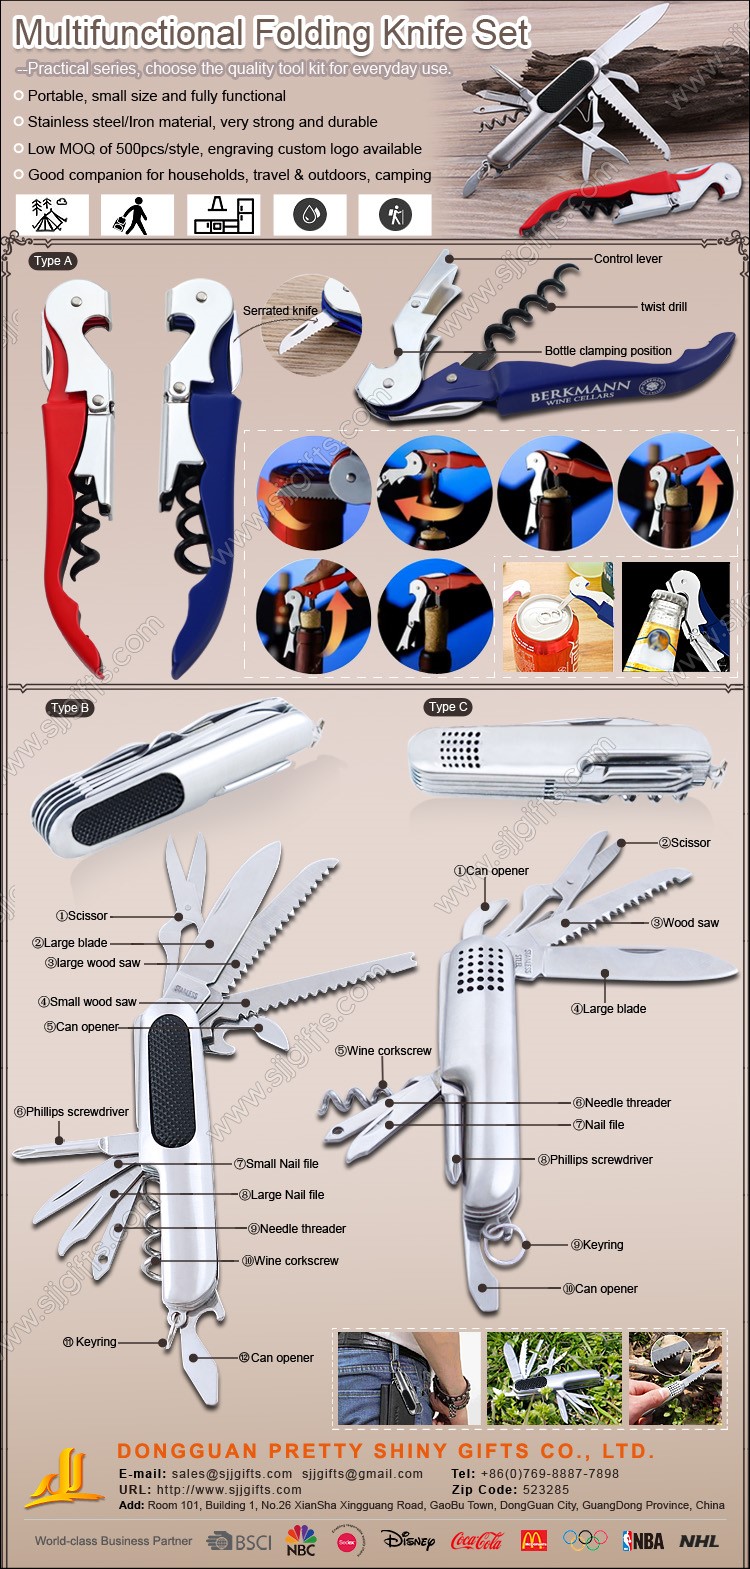 Multifunctional Folding Knife Set